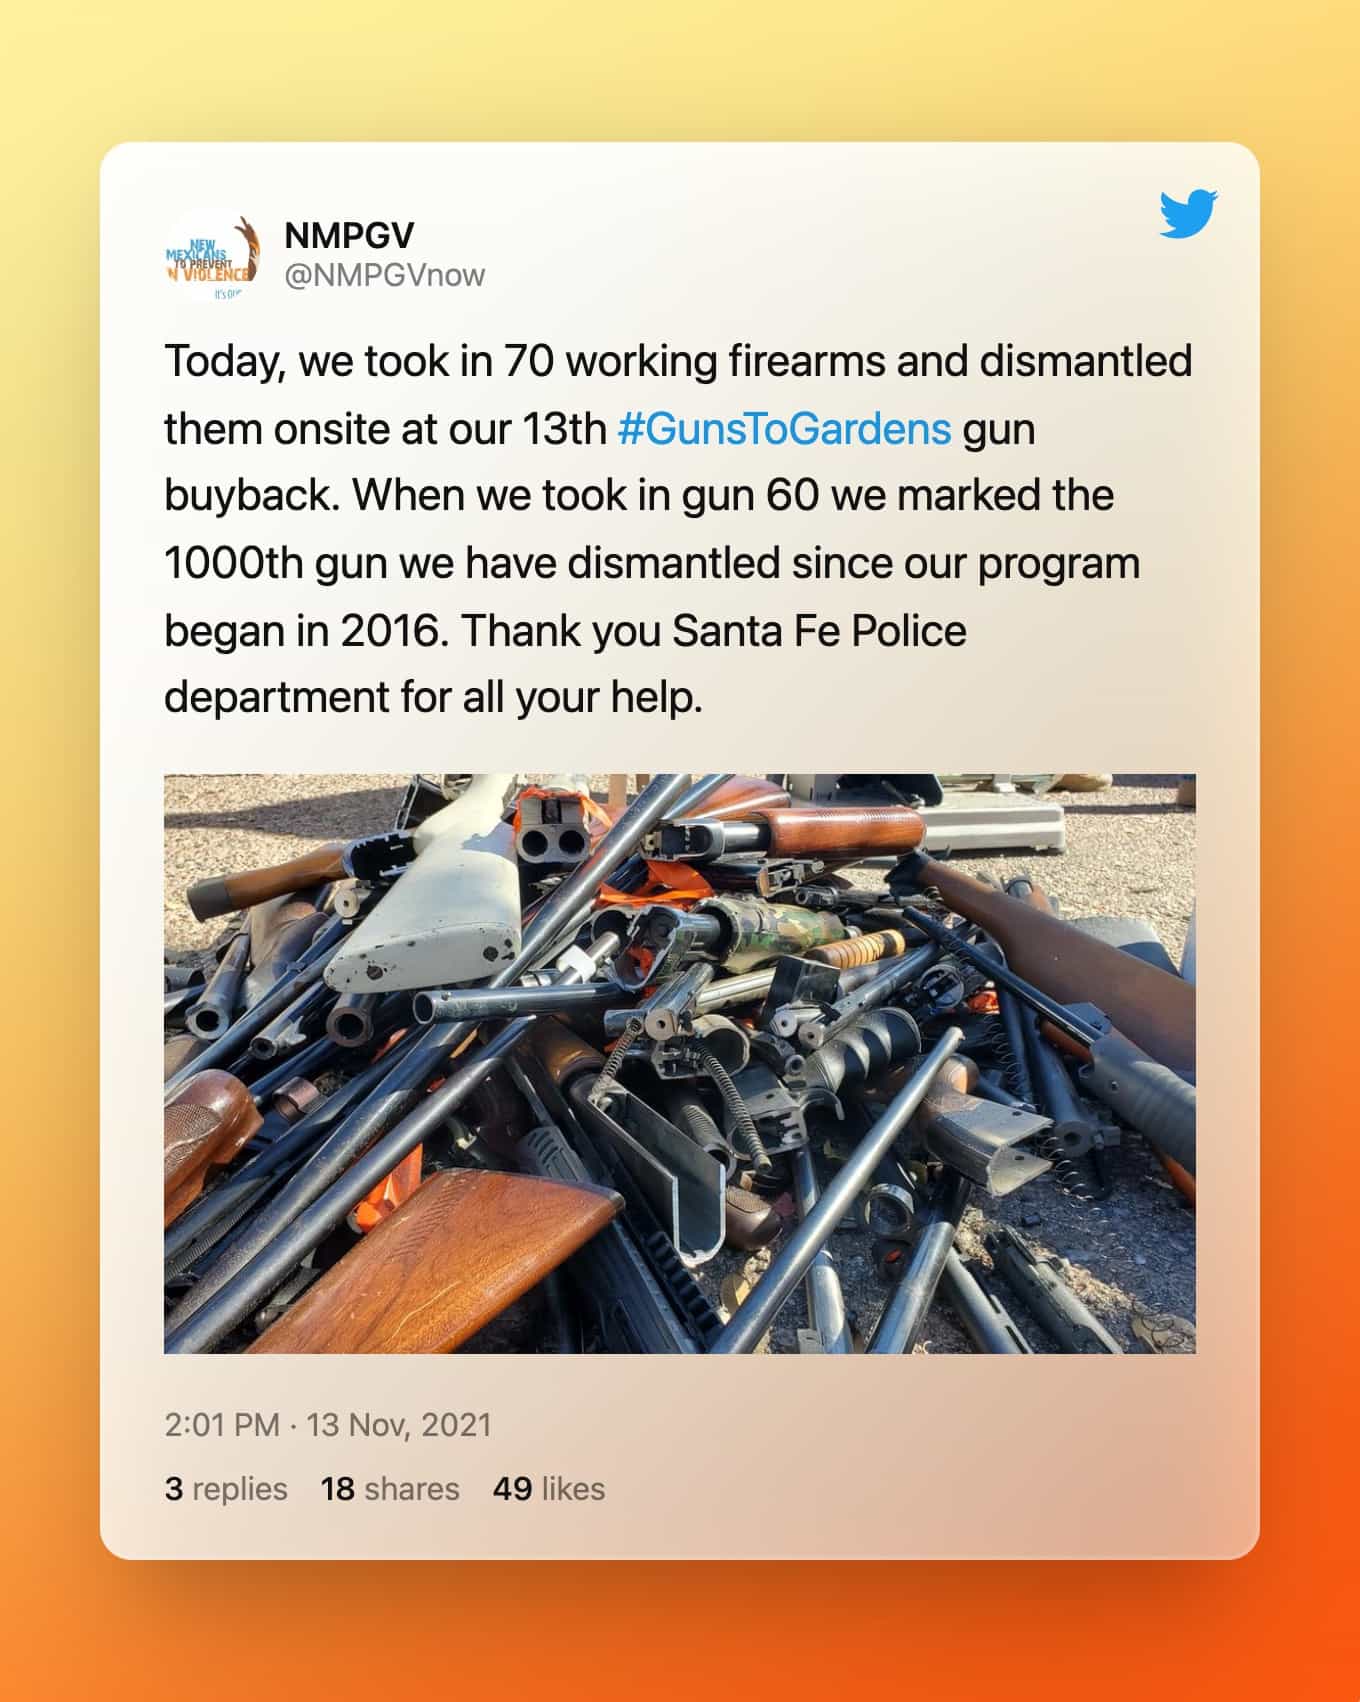 @NMPGVnow op Twitter: Vandaag hebben we 70 werkende vuurwapens opgenomen en ter plaatse ontmanteld bij onze 13e #GunsToGardens terugkoop van wapens. Toen we pistool 60 innamen, markeerden we het 1000e kanon dat we hebben ontmanteld sinds ons programma in 2016 begon. Bedankt Santa Fe Police afdeling voor al uw hulp.